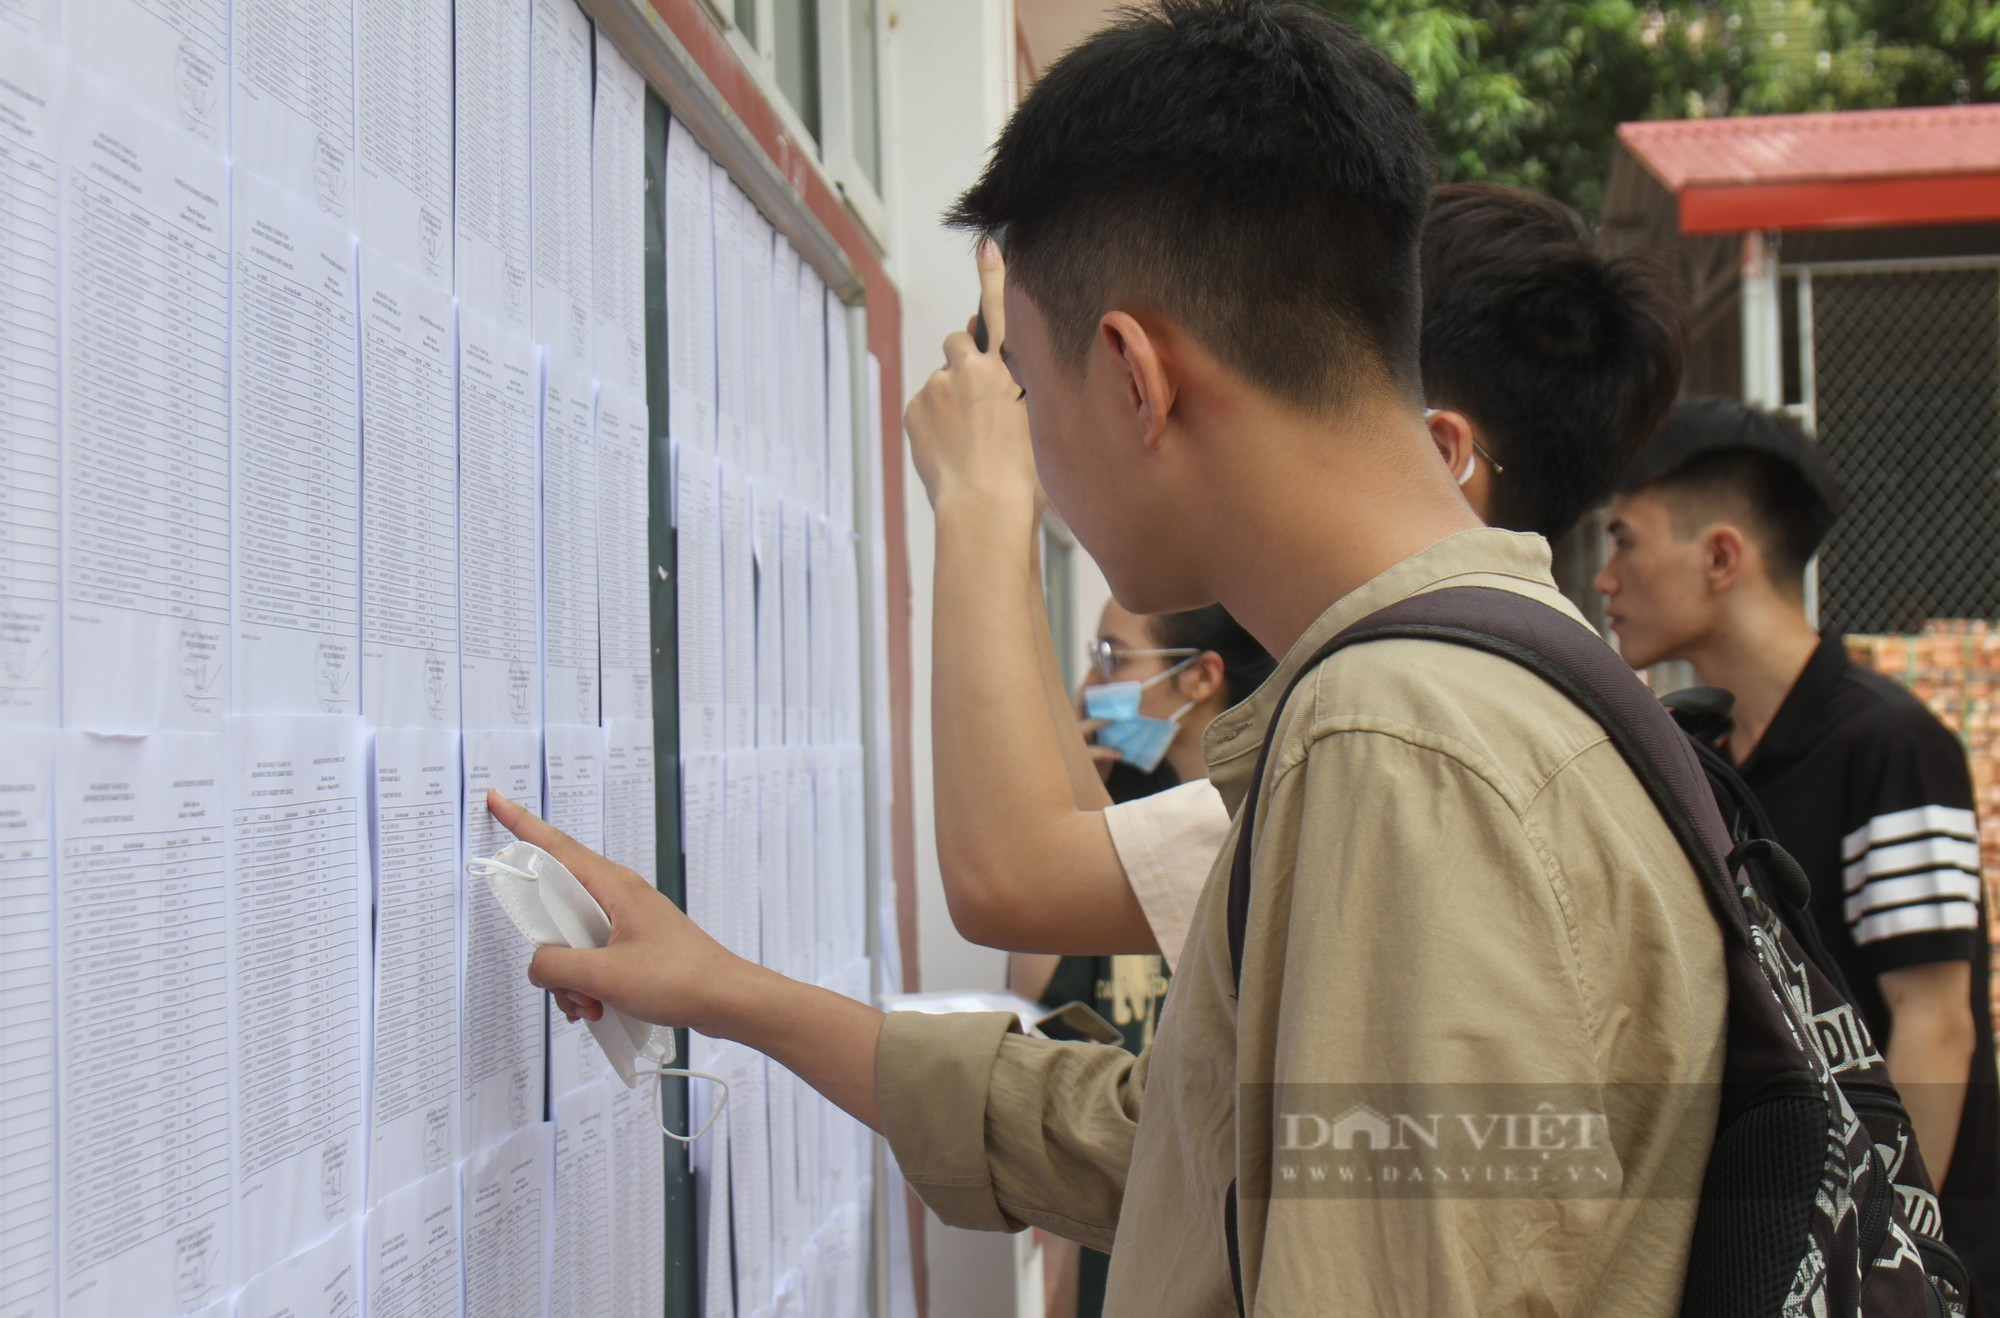 Sĩ tử ở Nghệ An đến sớm soát kỹ thông tin, tâm lý thoải mái trước kỳ thi tốt nghiệp THPT 2023 - Ảnh 4.